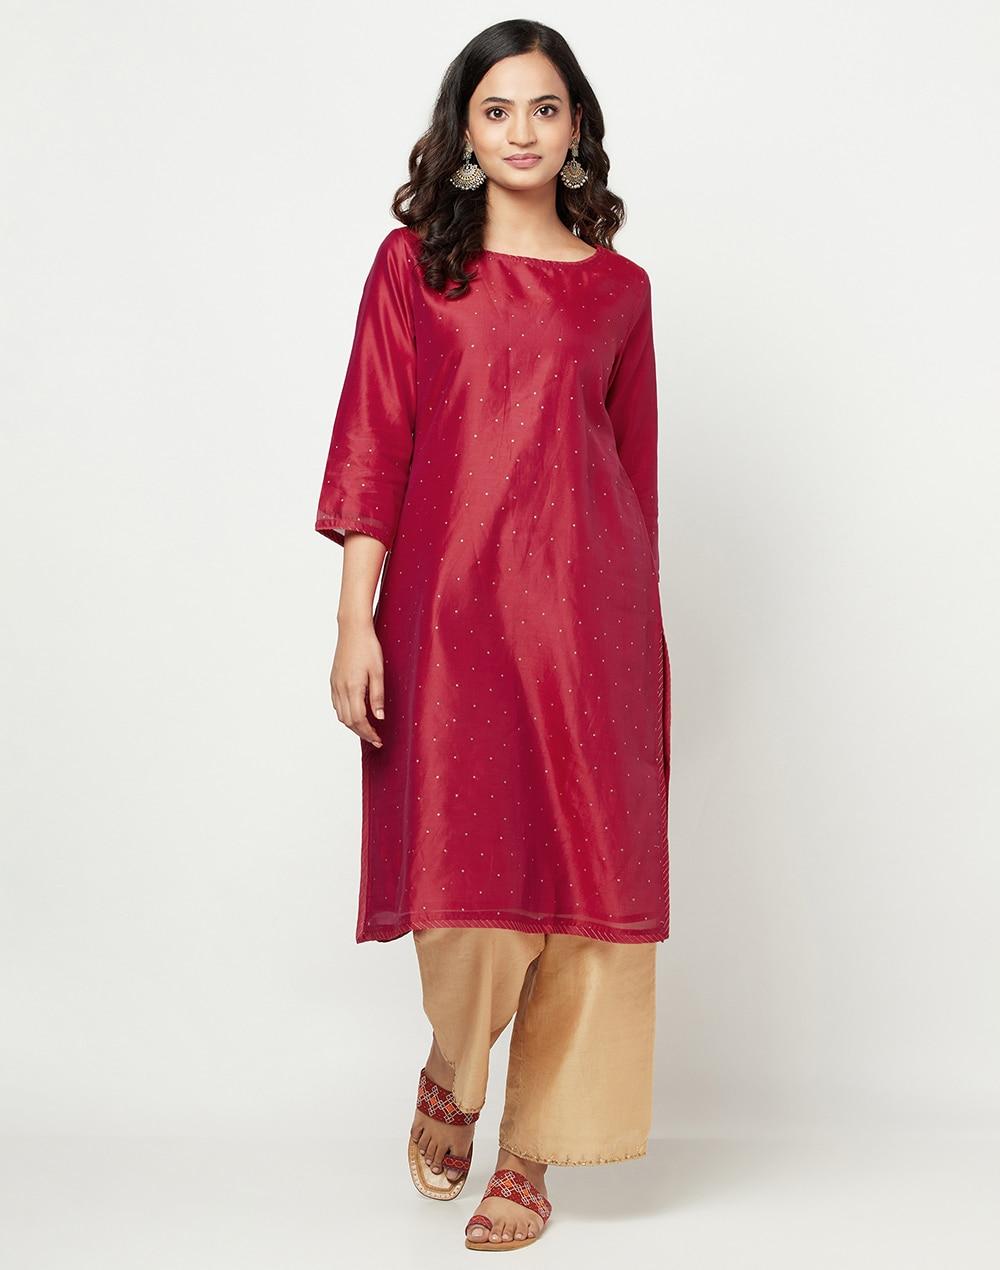 cotton silk printed slim fit knee length kurta